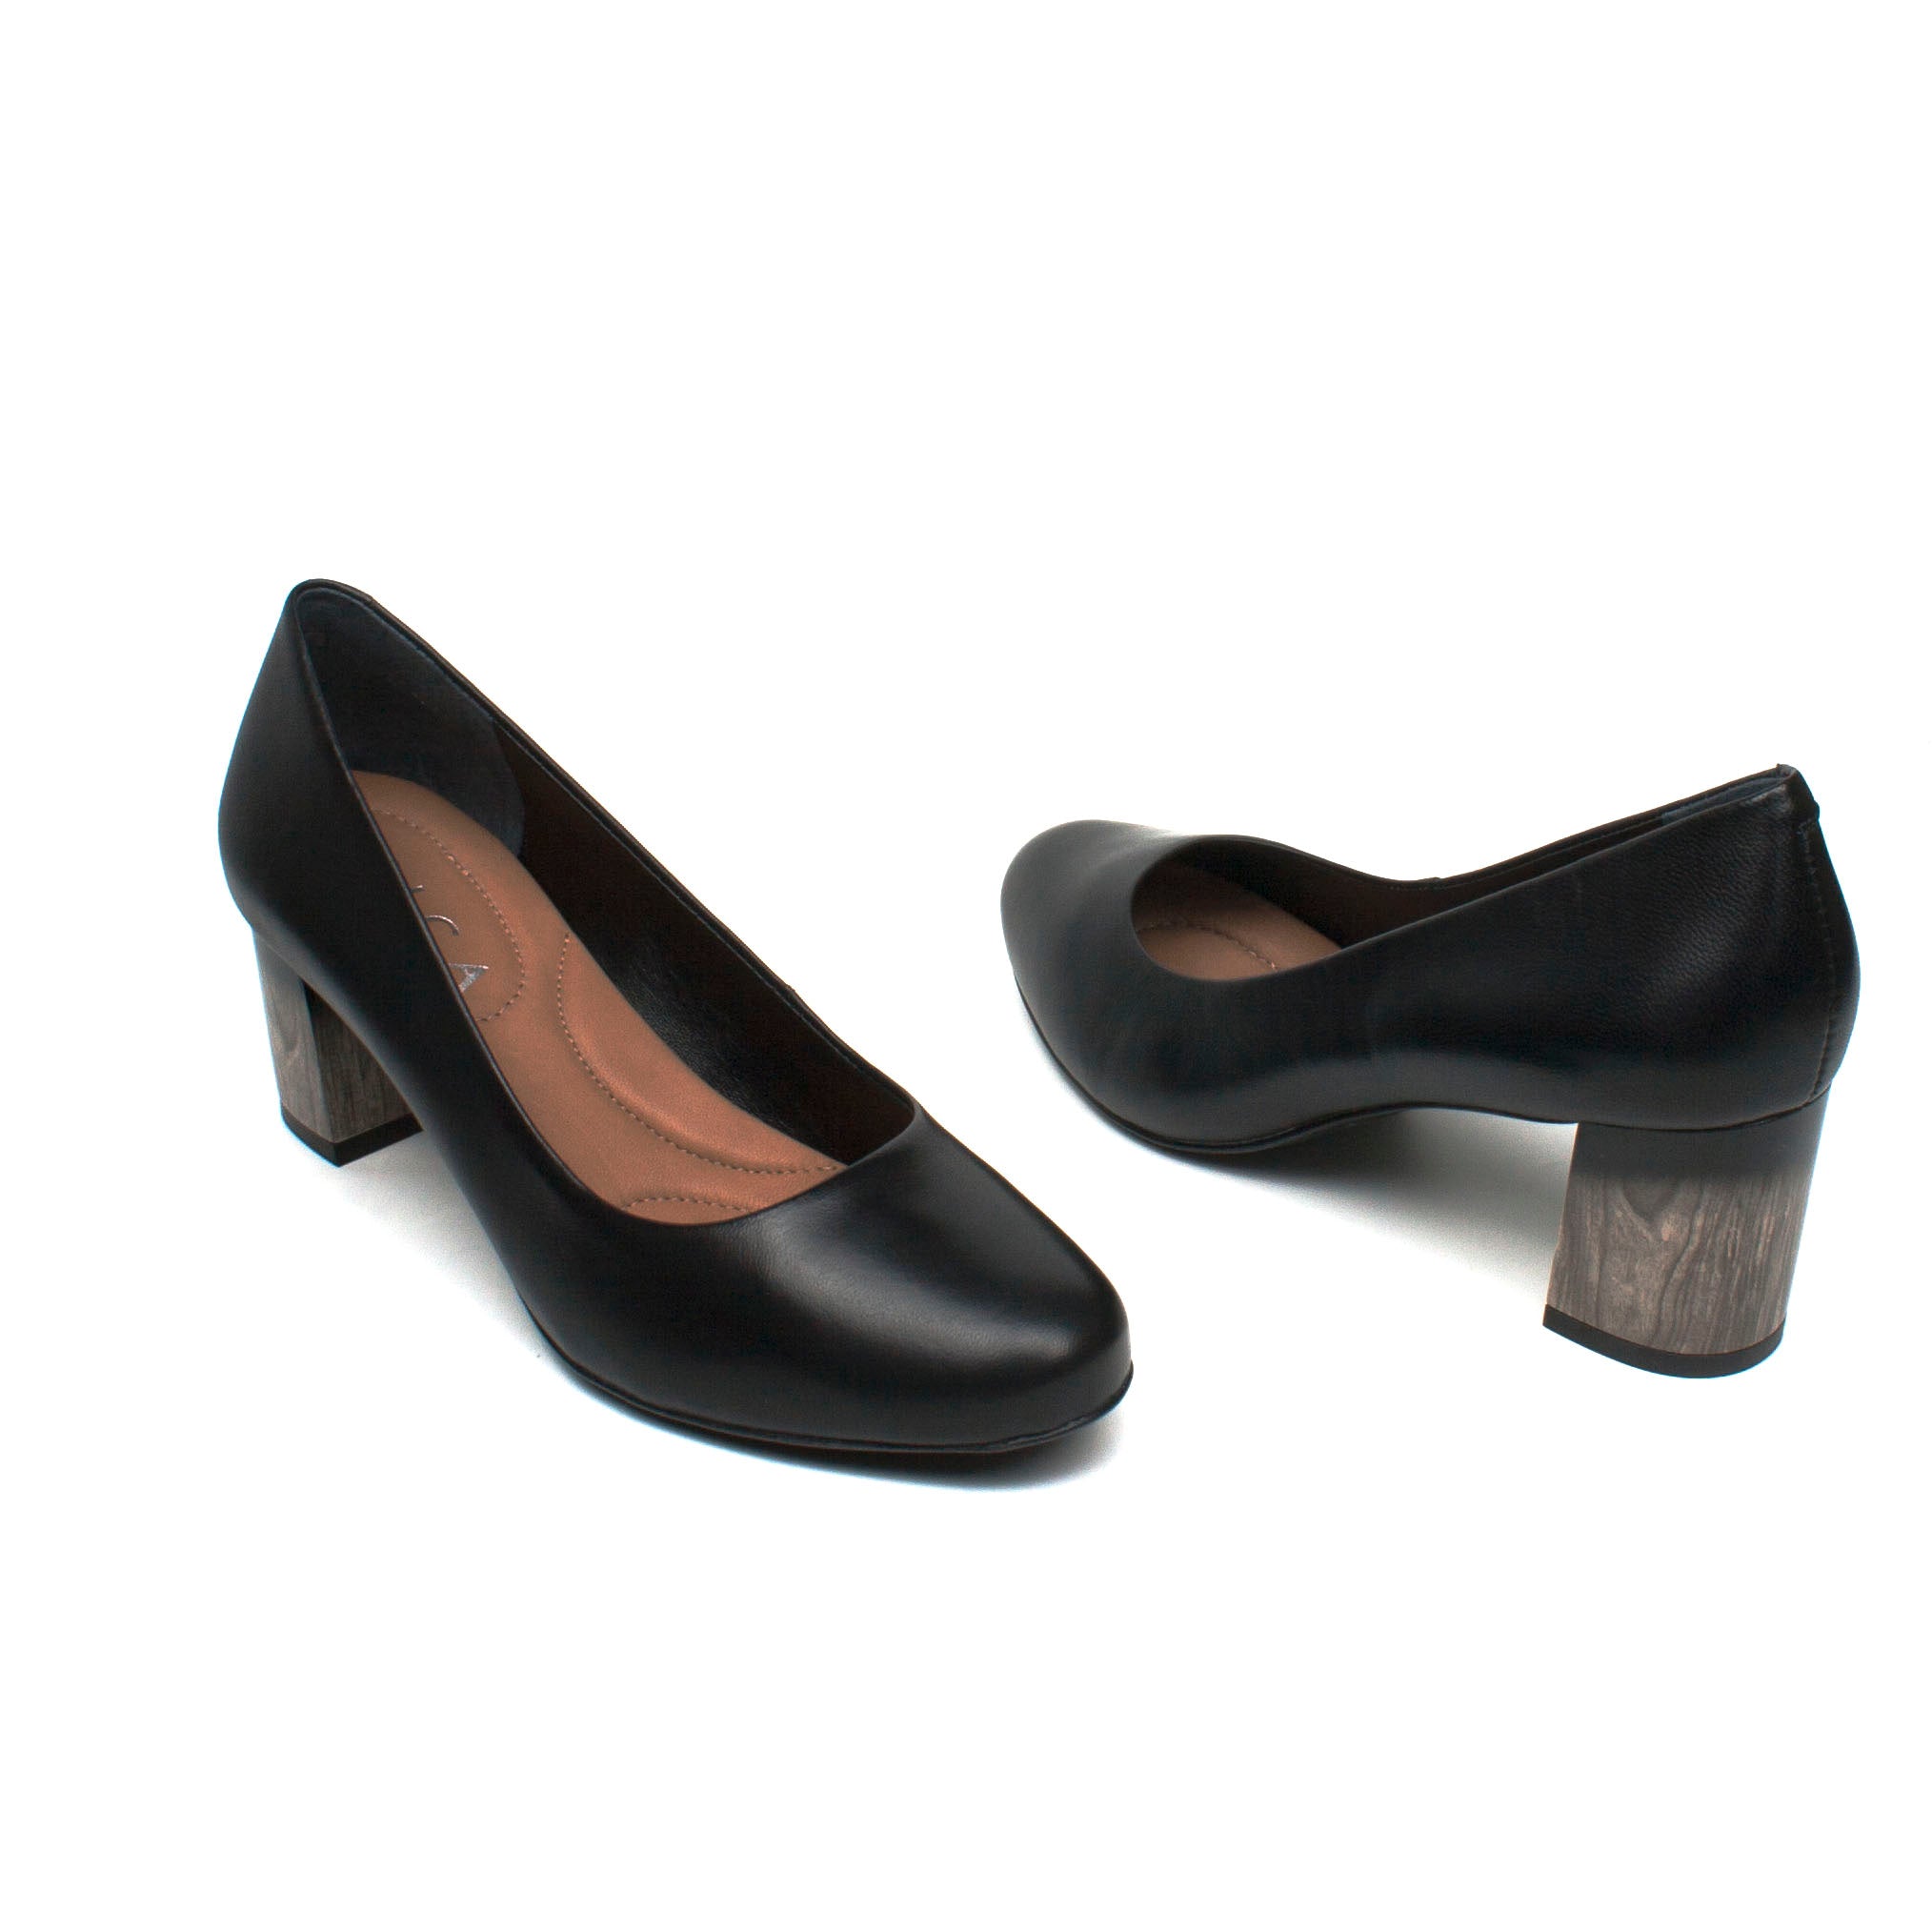 Epica pantofi dama eleganti negru ID1685-NG